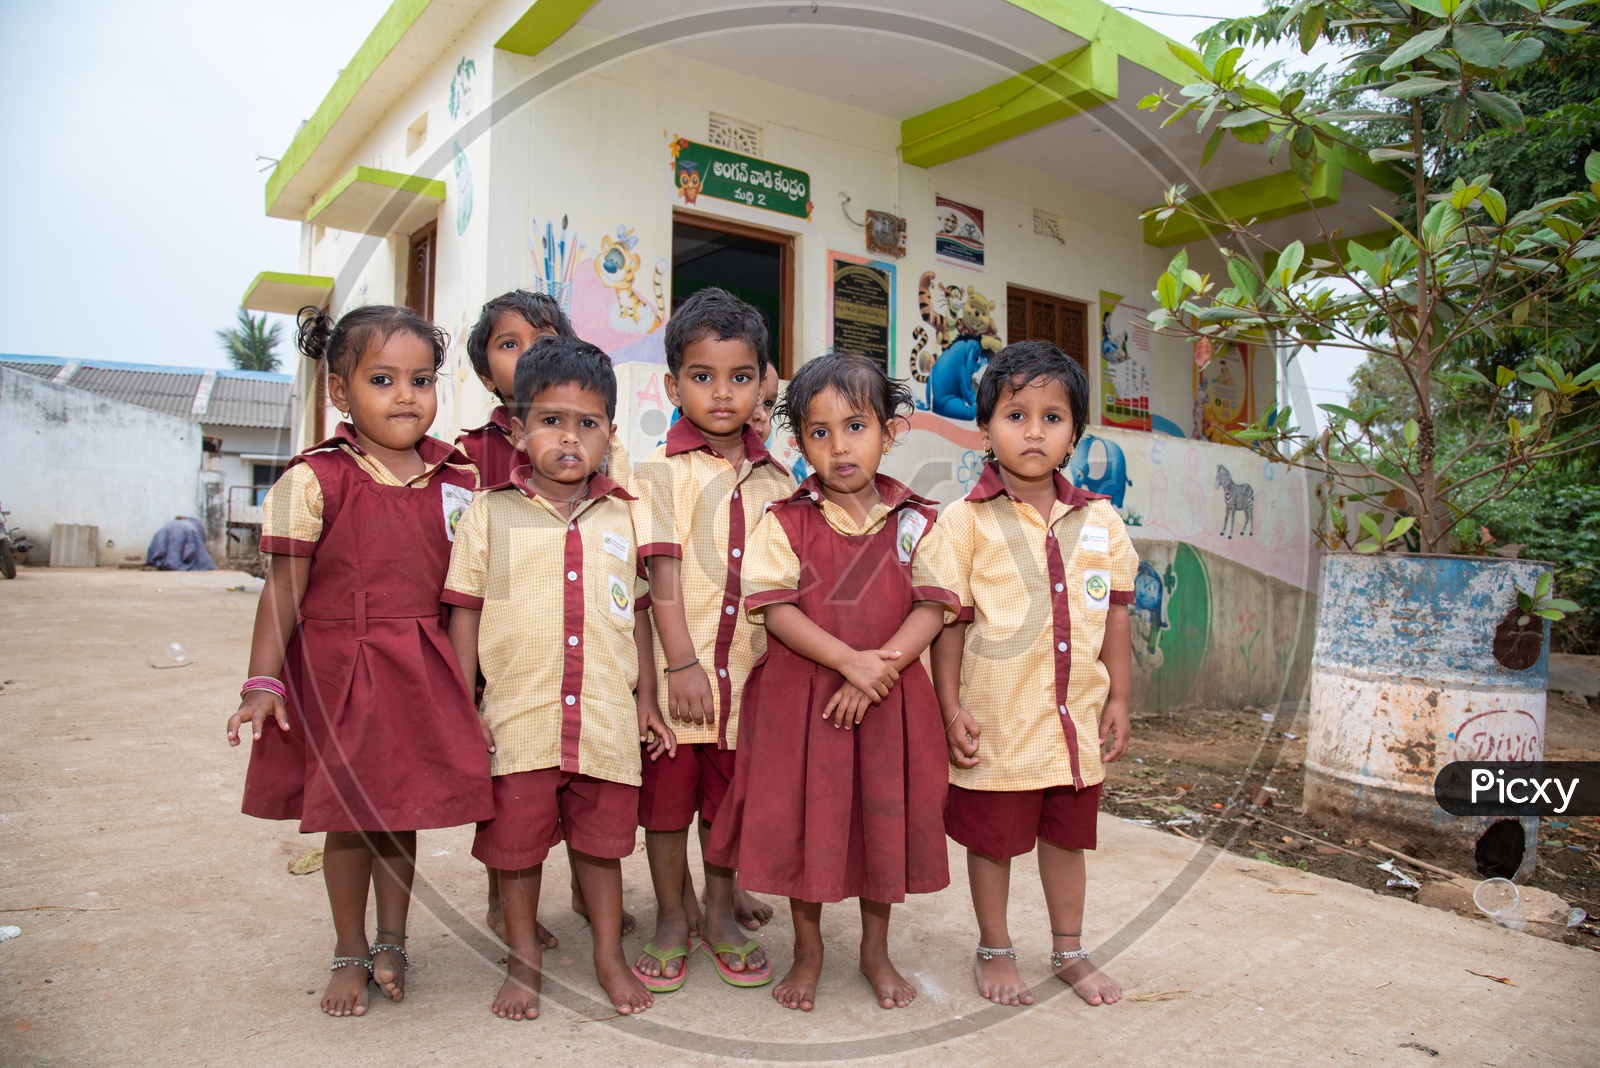 Students at an Anganwadi center